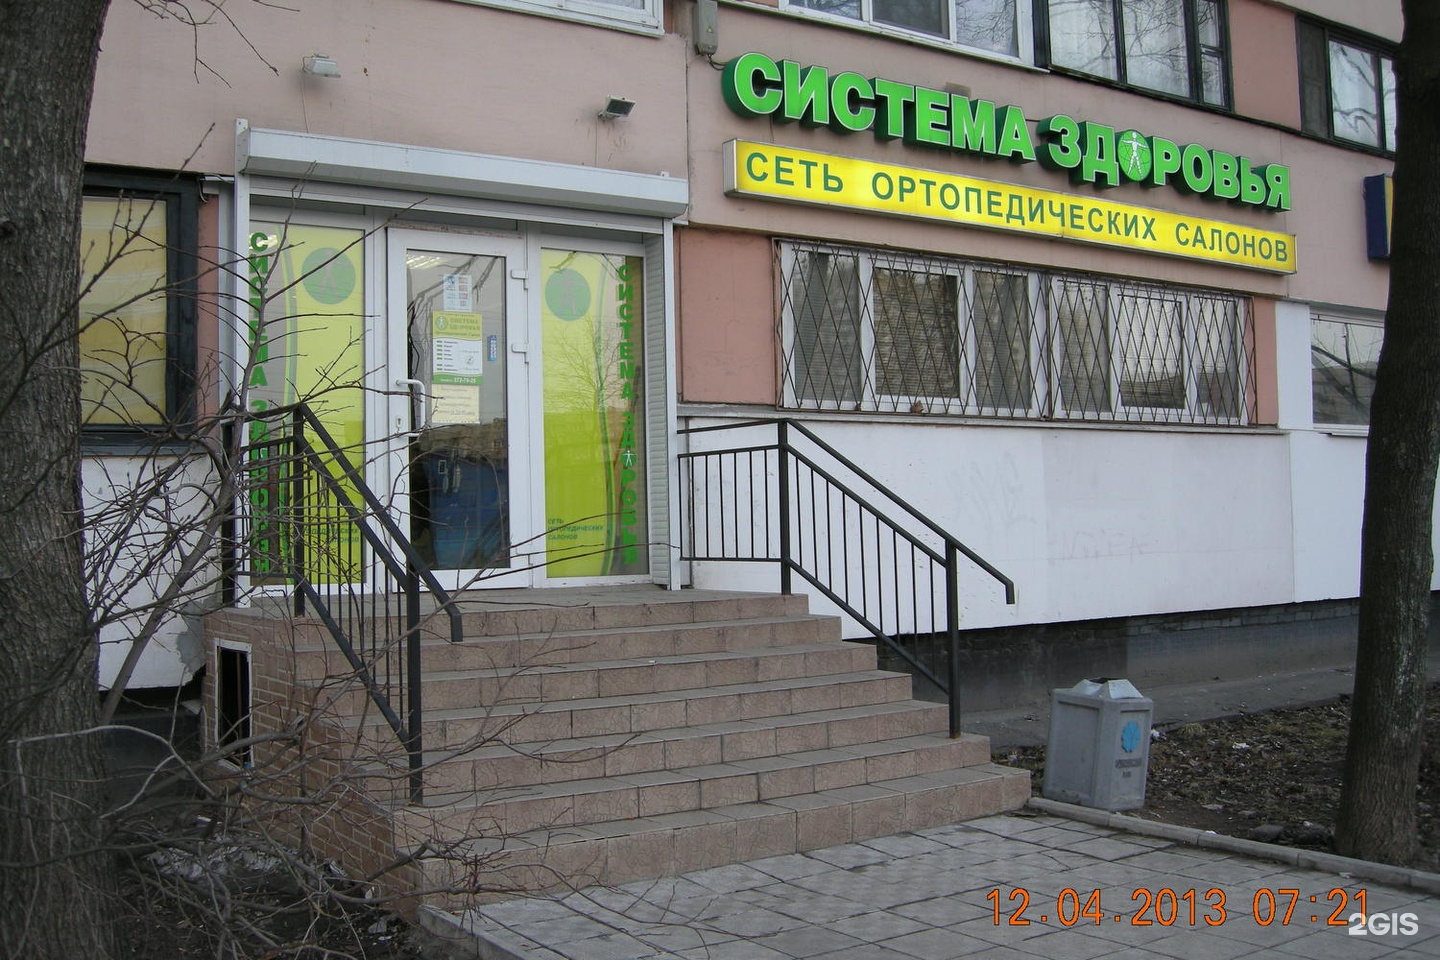 Центр здоровье ортопед. Бухарестская 90 аптека. Бухарестская 78 ортопедический салон. Планета здоровья Бухарестская 74. Система здоровья ортопедический салон.